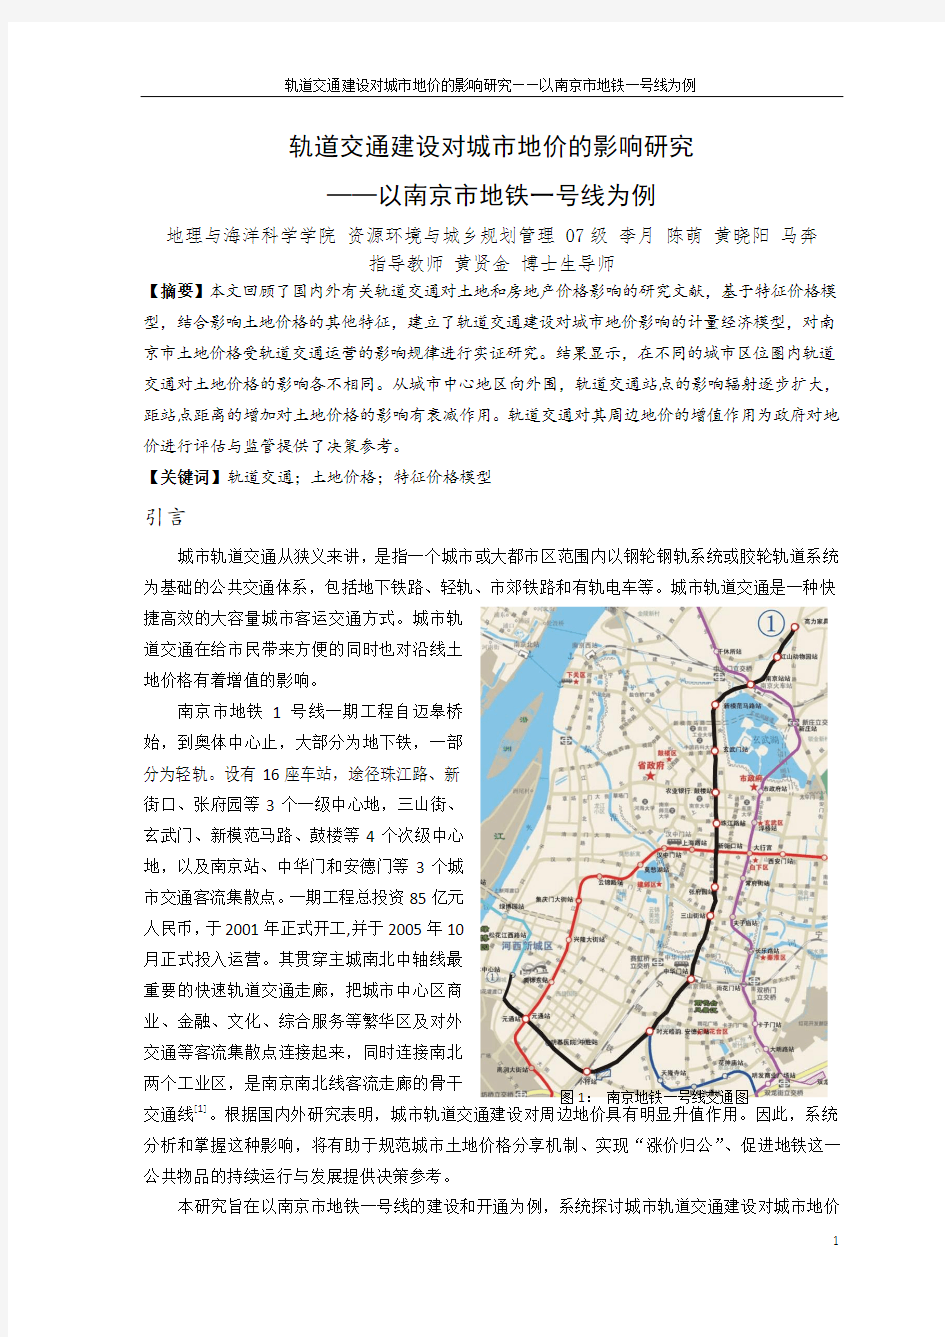 轨道交通建设对城市地价的影响研究——以南京市为例